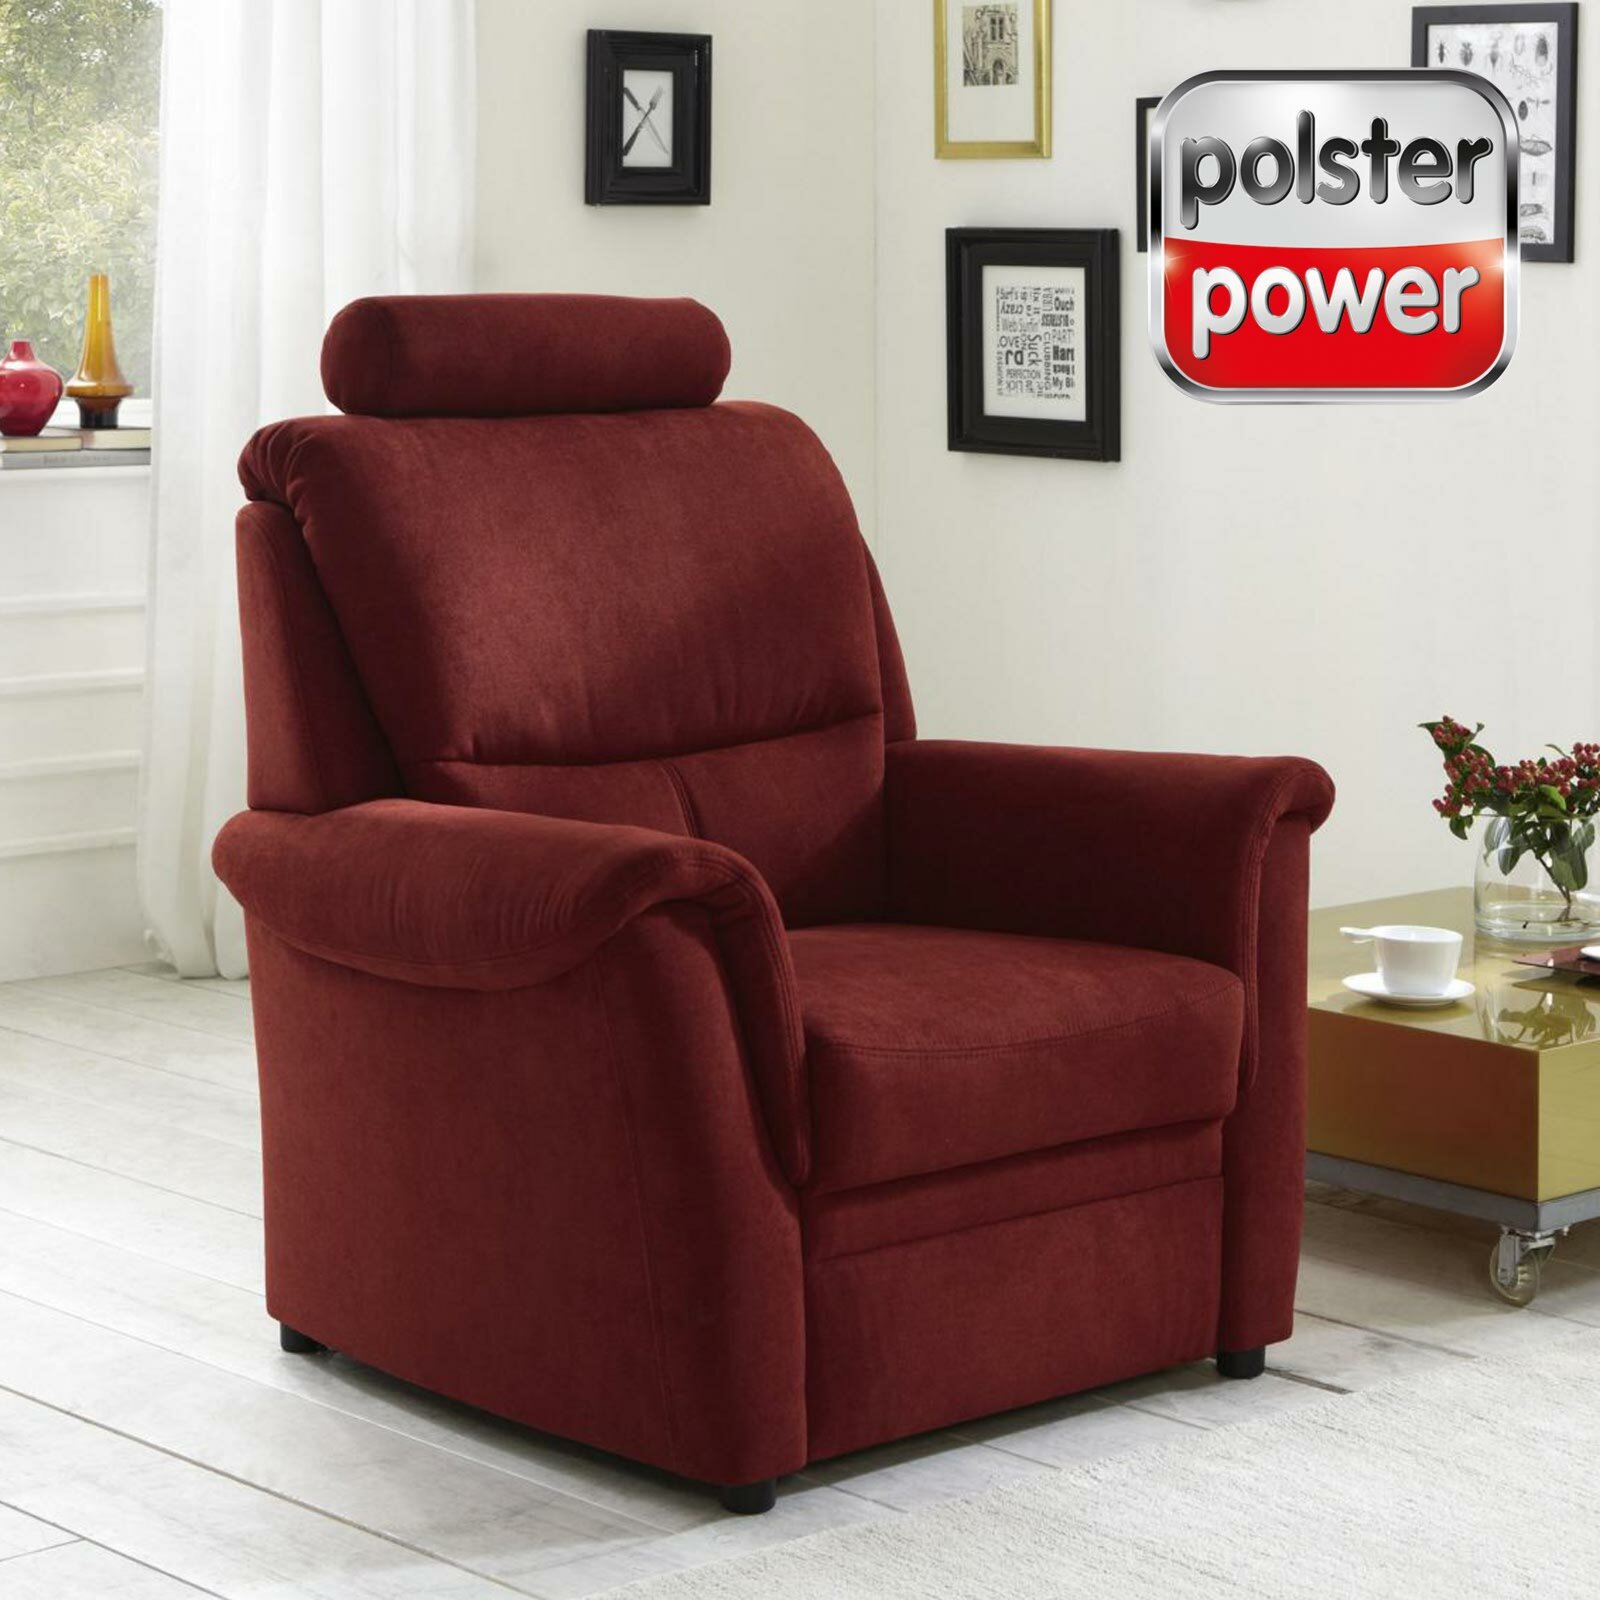 ROLLER - bei polsterpower Microchenille Sessel Online | - bordeaux kaufen